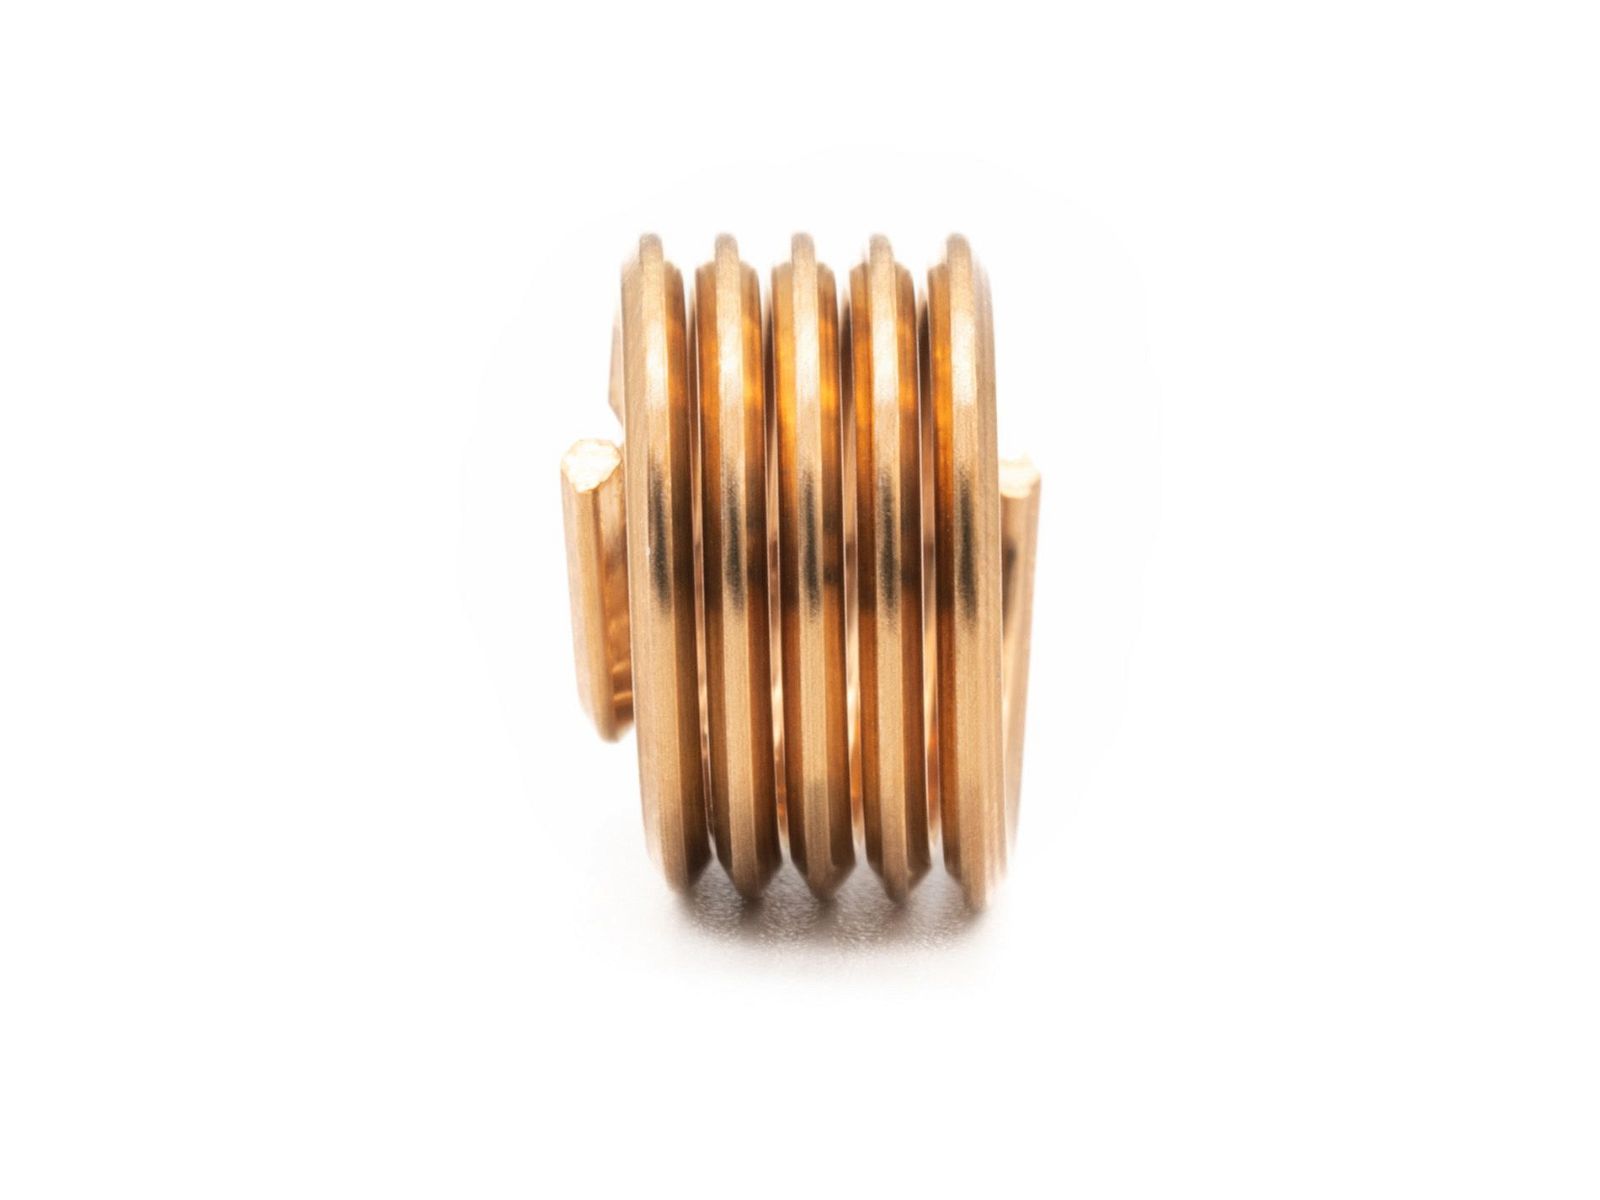 BaerCoil Drahtgewindeeinsätze M 12 x 1,75 - 1,0 D (12 mm) - frei durchlaufend - Bronze - 100 Stück